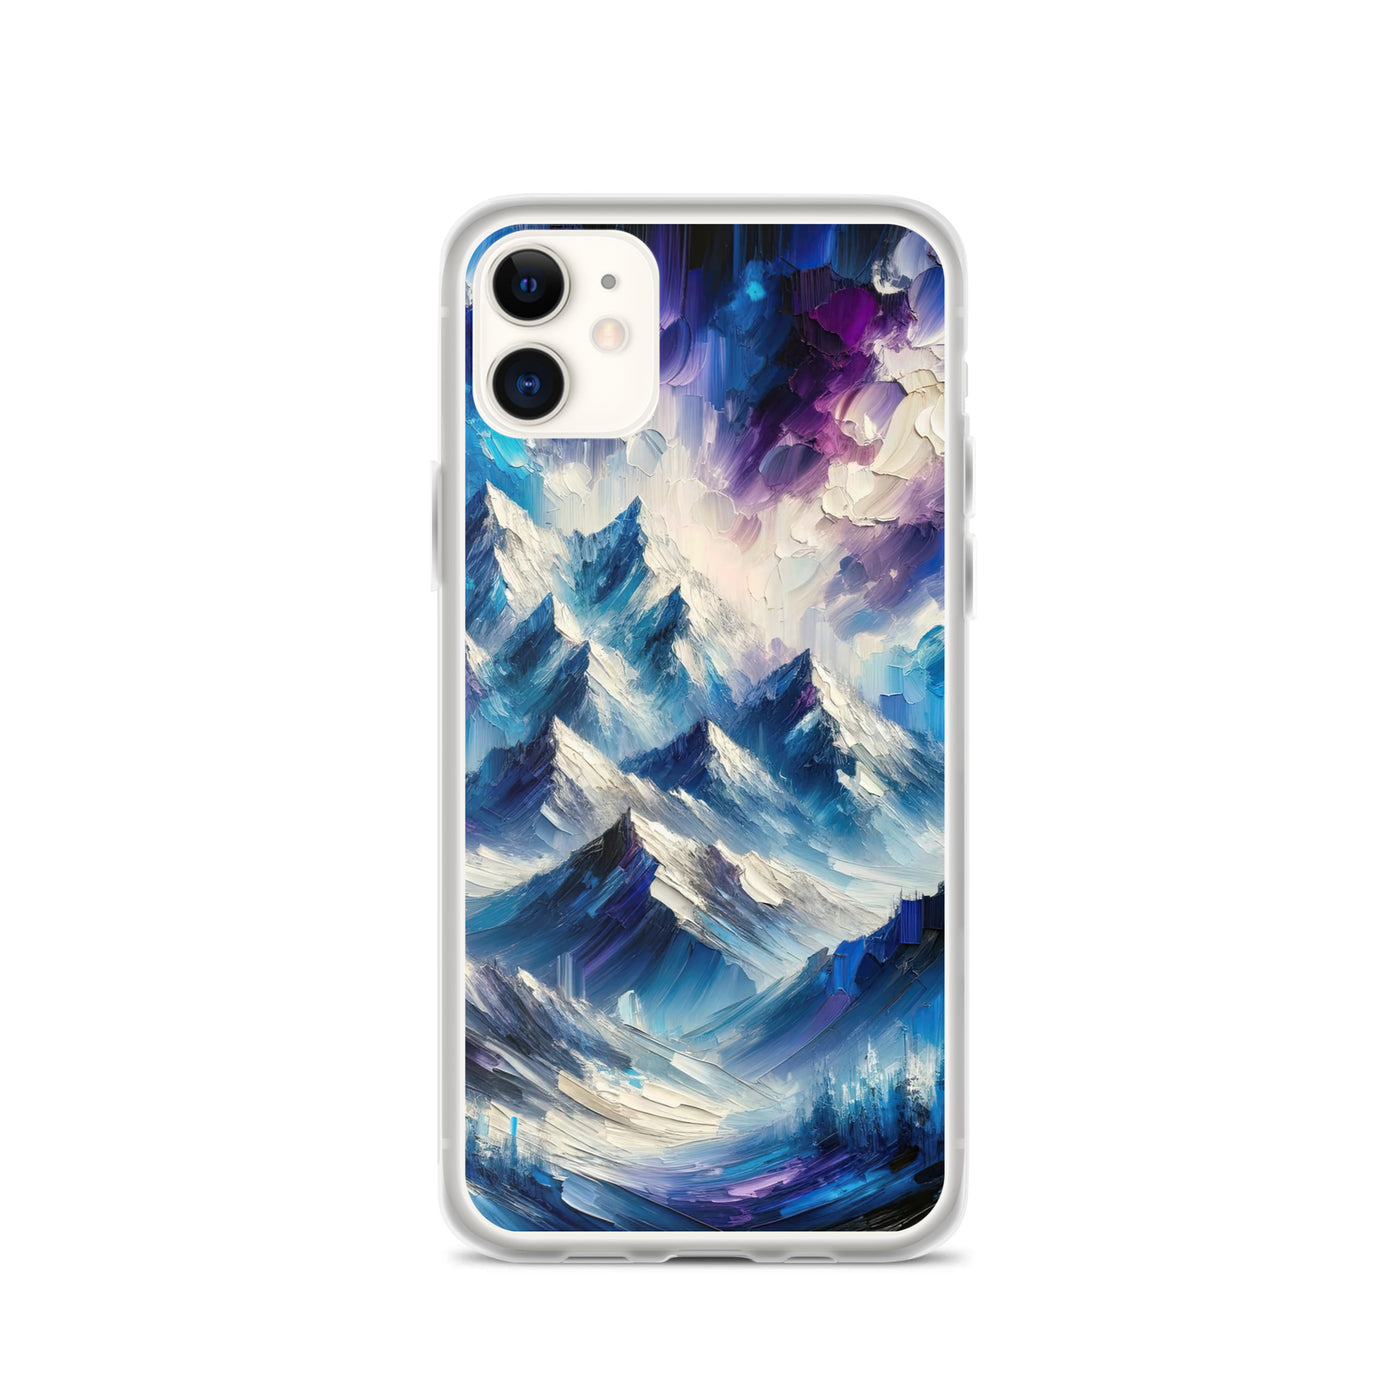 Alpenabstraktion mit dramatischem Himmel in Öl - iPhone Schutzhülle (durchsichtig) berge xxx yyy zzz iPhone 11